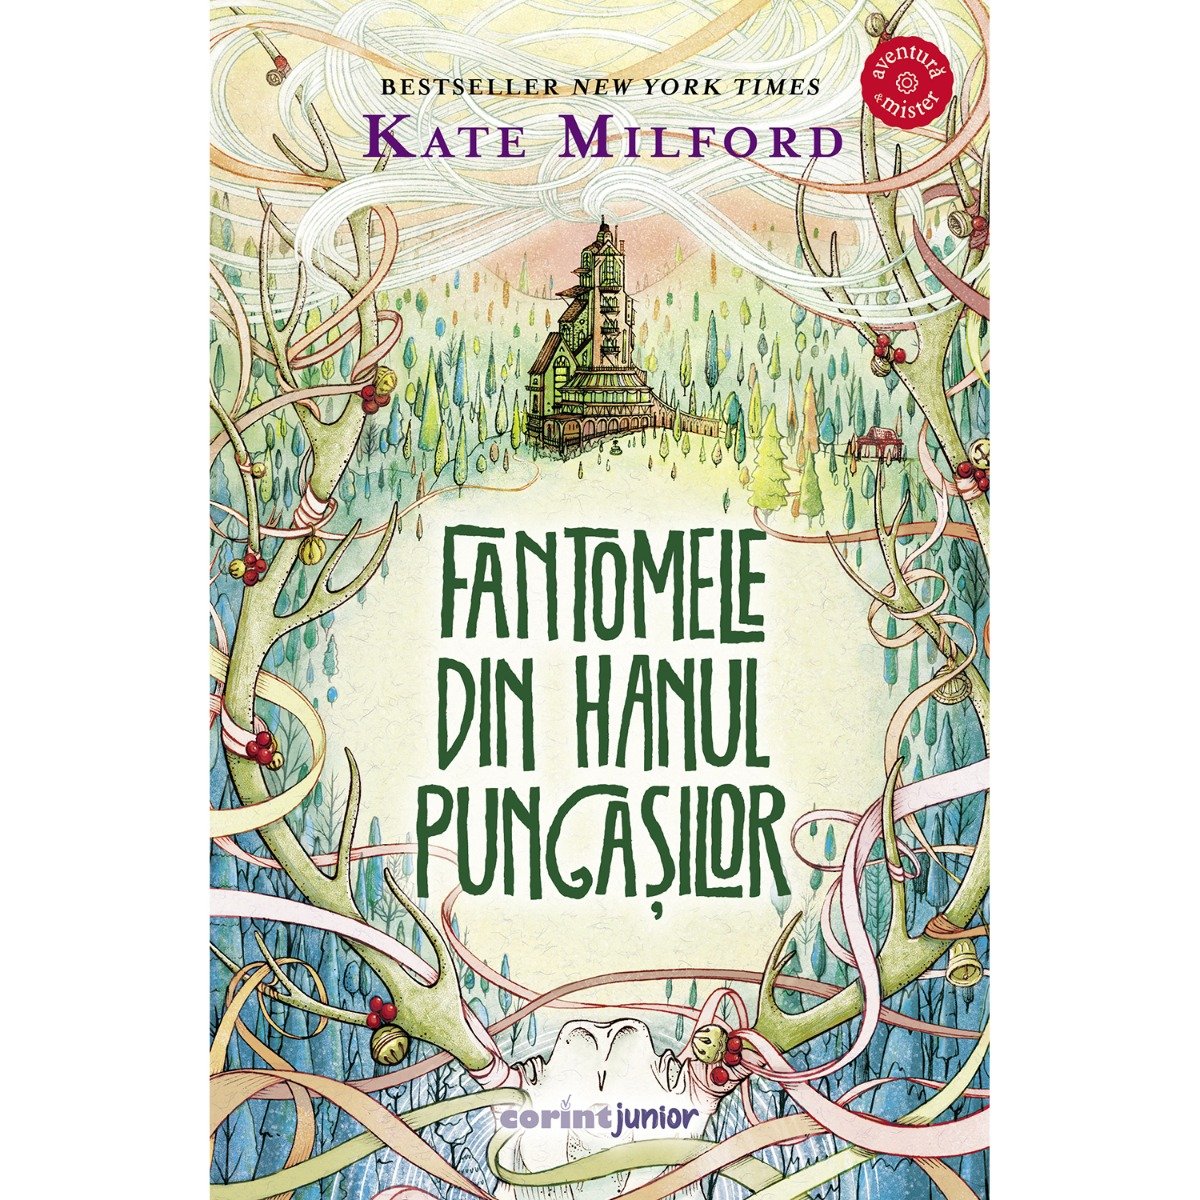 Fantomele din hanul pungasilor, Kate Milford